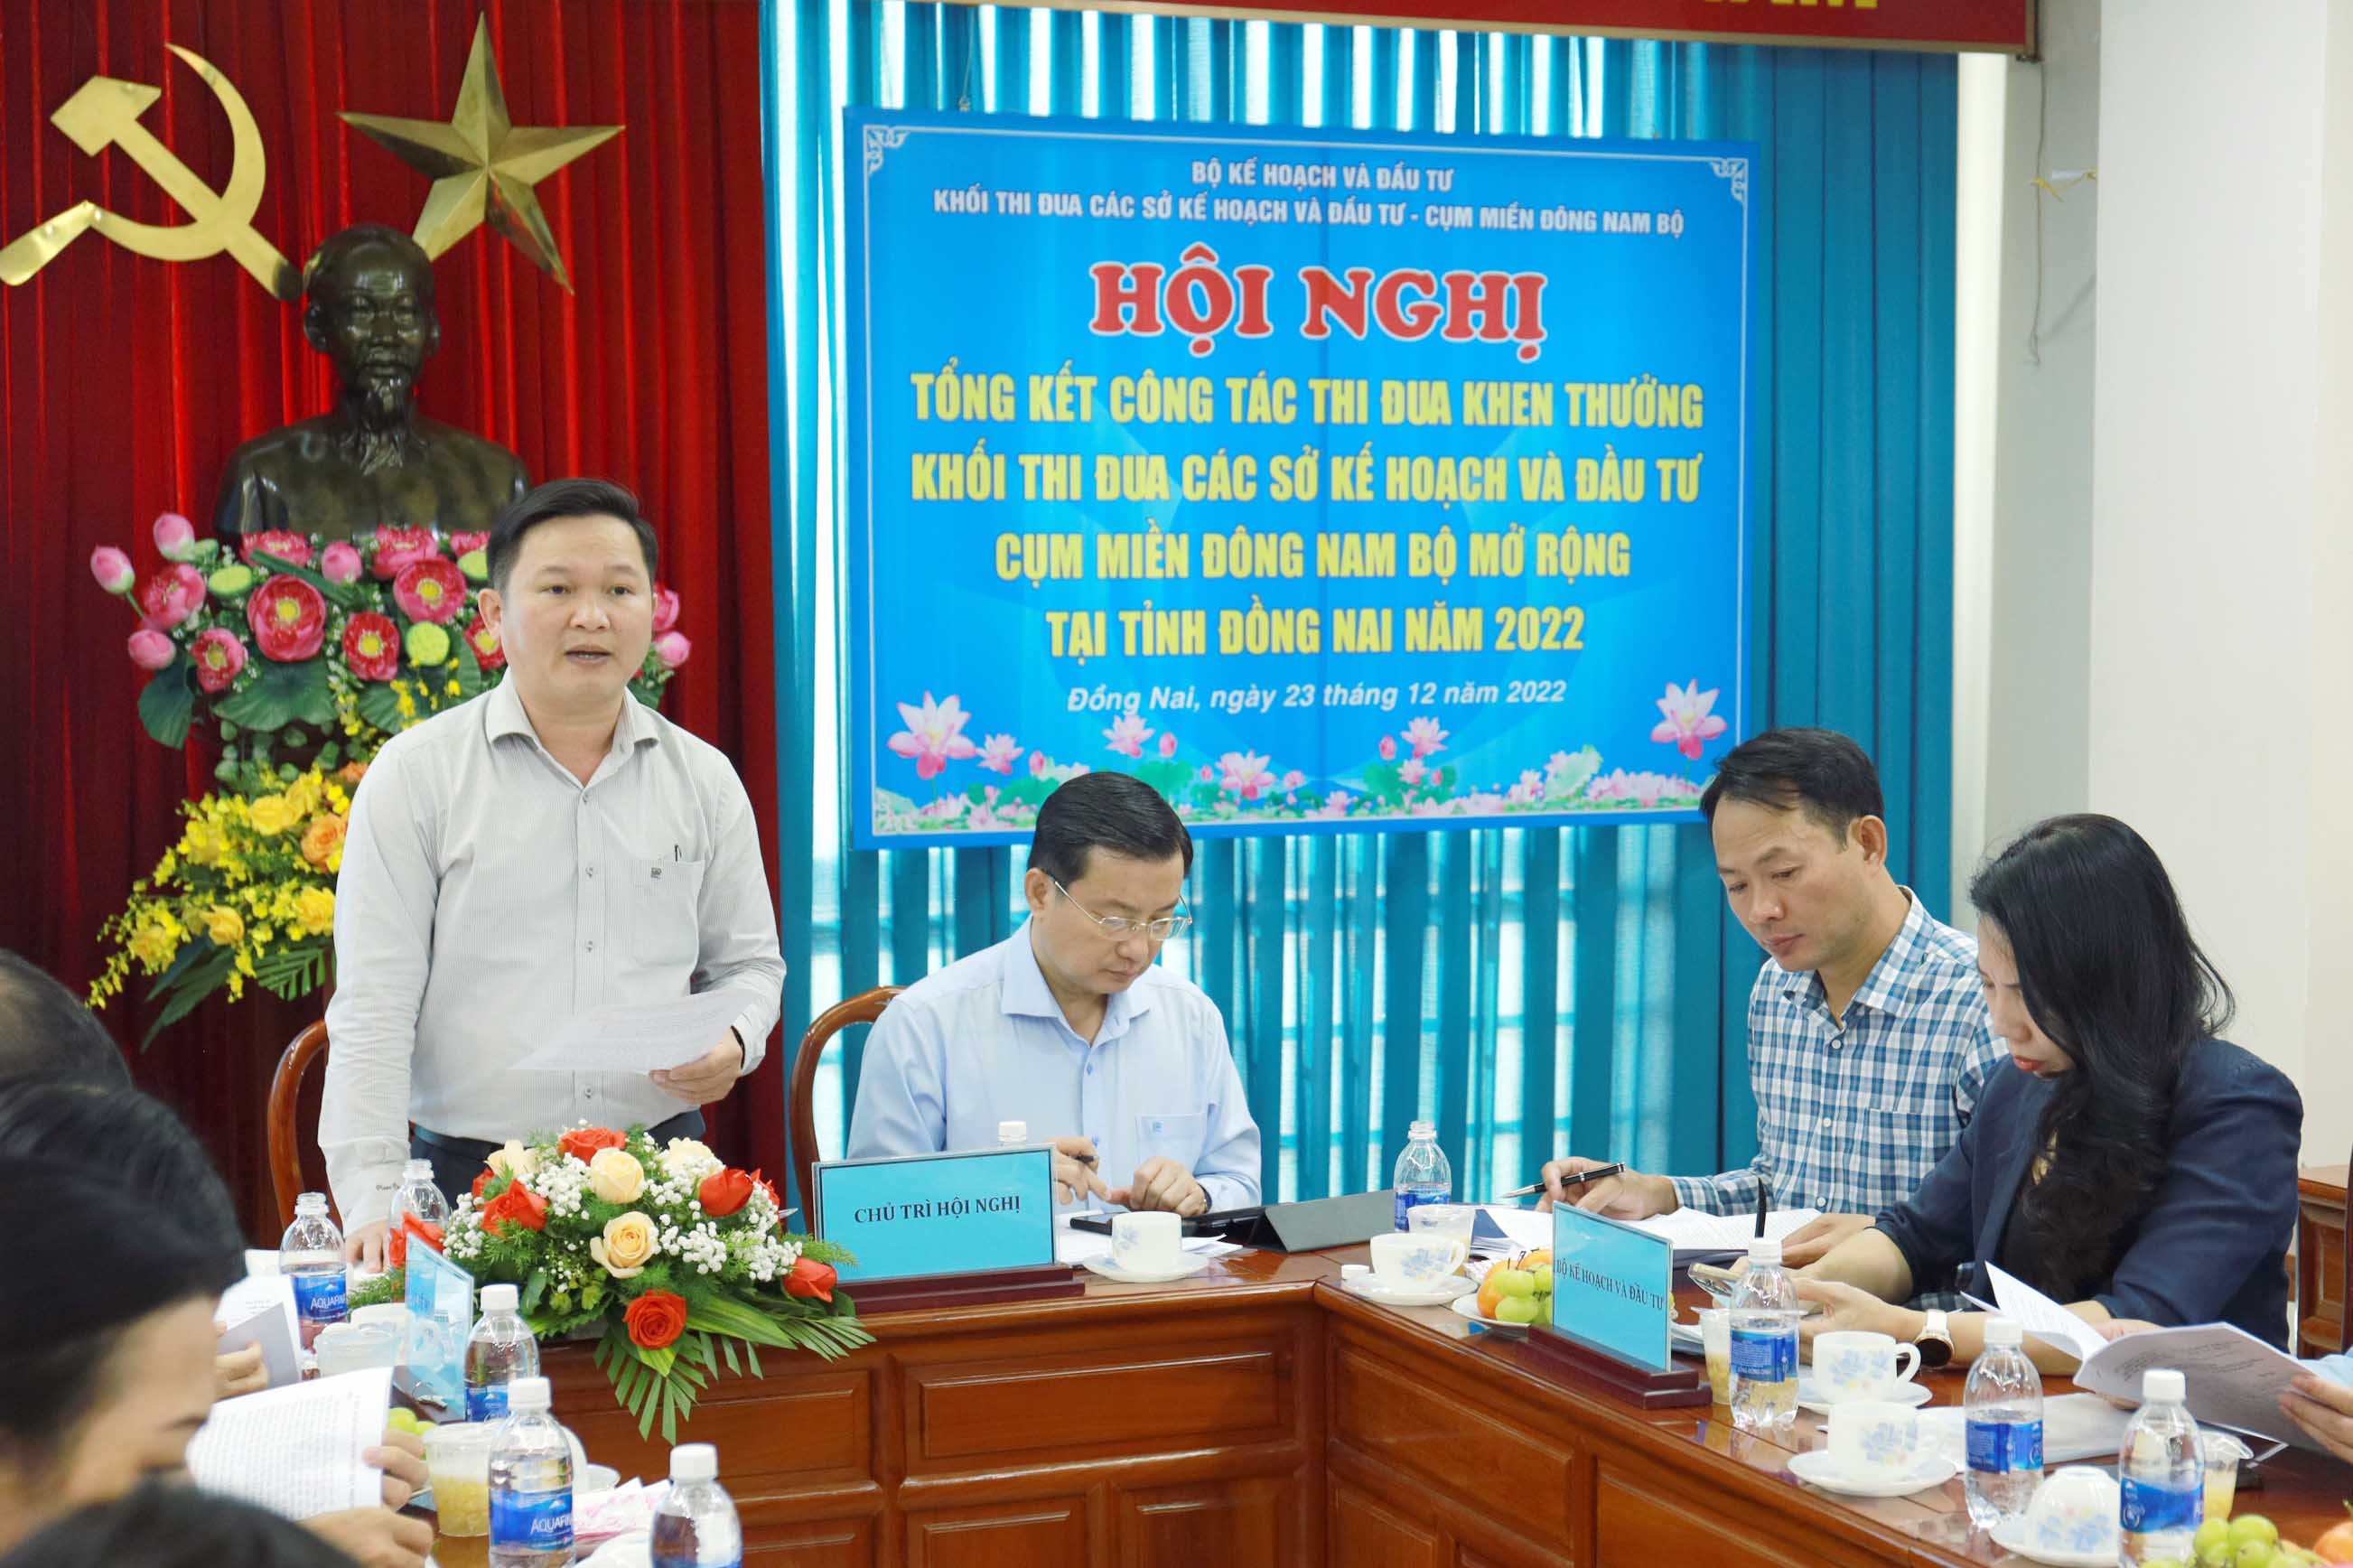 Ông Nguyễn Hữu Nguyên - Giám đốc Sở Kế hoạch và Đầu tư tỉnh Đồng Nai (Trưởng khối thi đua) báo cáo tại Hội nghị.